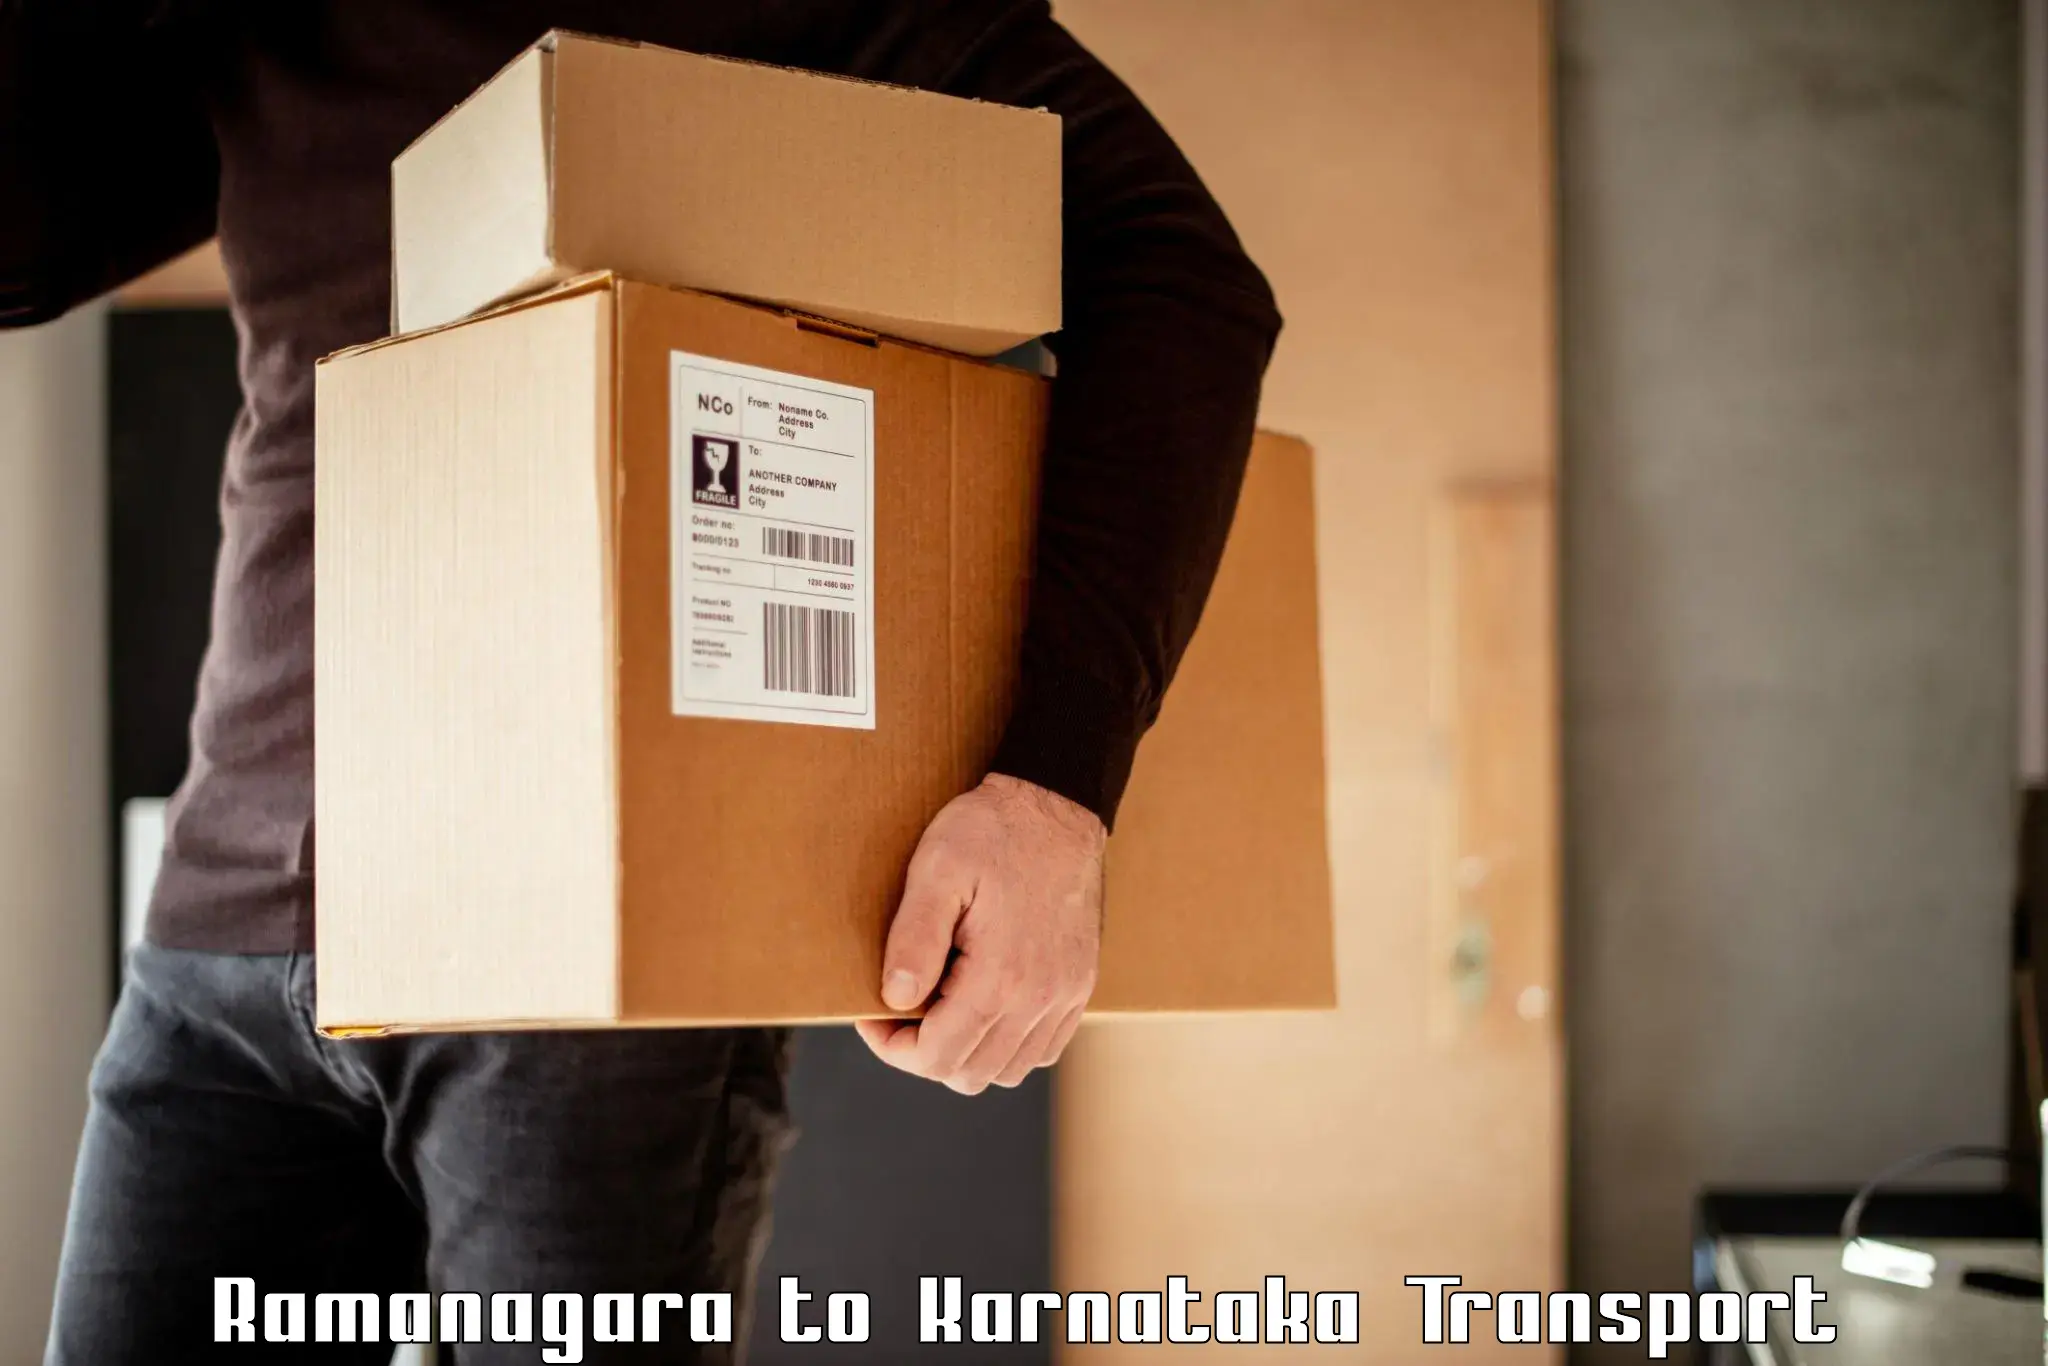 Cargo transportation services Ramanagara to Ugar